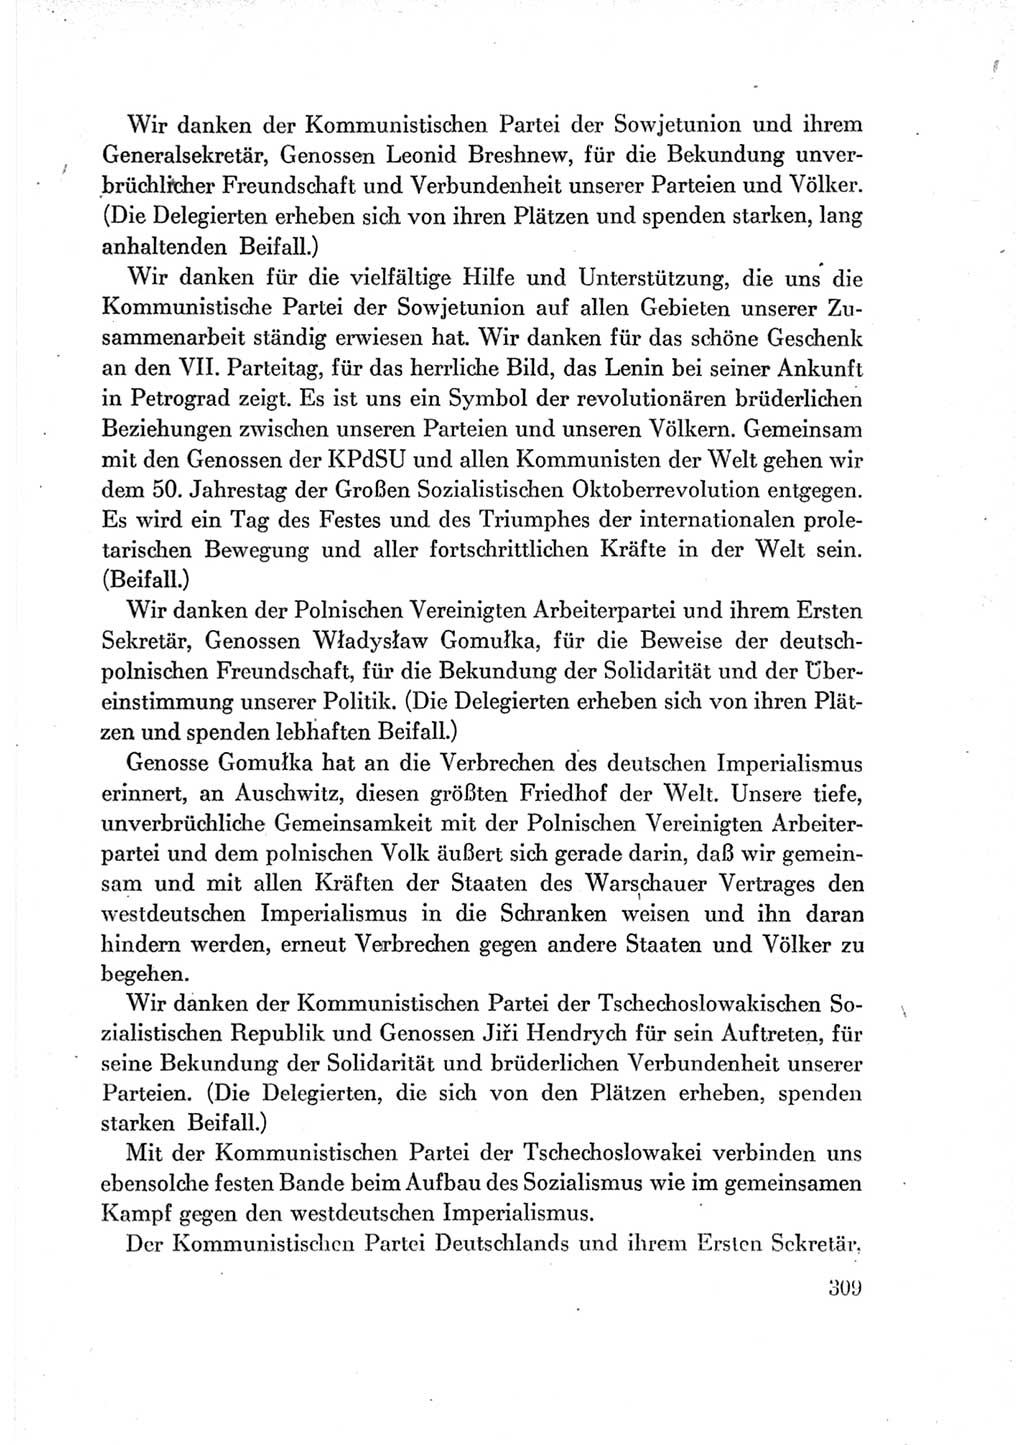 Protokoll der Verhandlungen des Ⅶ. Parteitages der Sozialistischen Einheitspartei Deutschlands (SED) [Deutsche Demokratische Republik (DDR)] 1967, Band Ⅱ, Seite 309 (Prot. Verh. Ⅶ. PT SED DDR 1967, Bd. Ⅱ, S. 309)